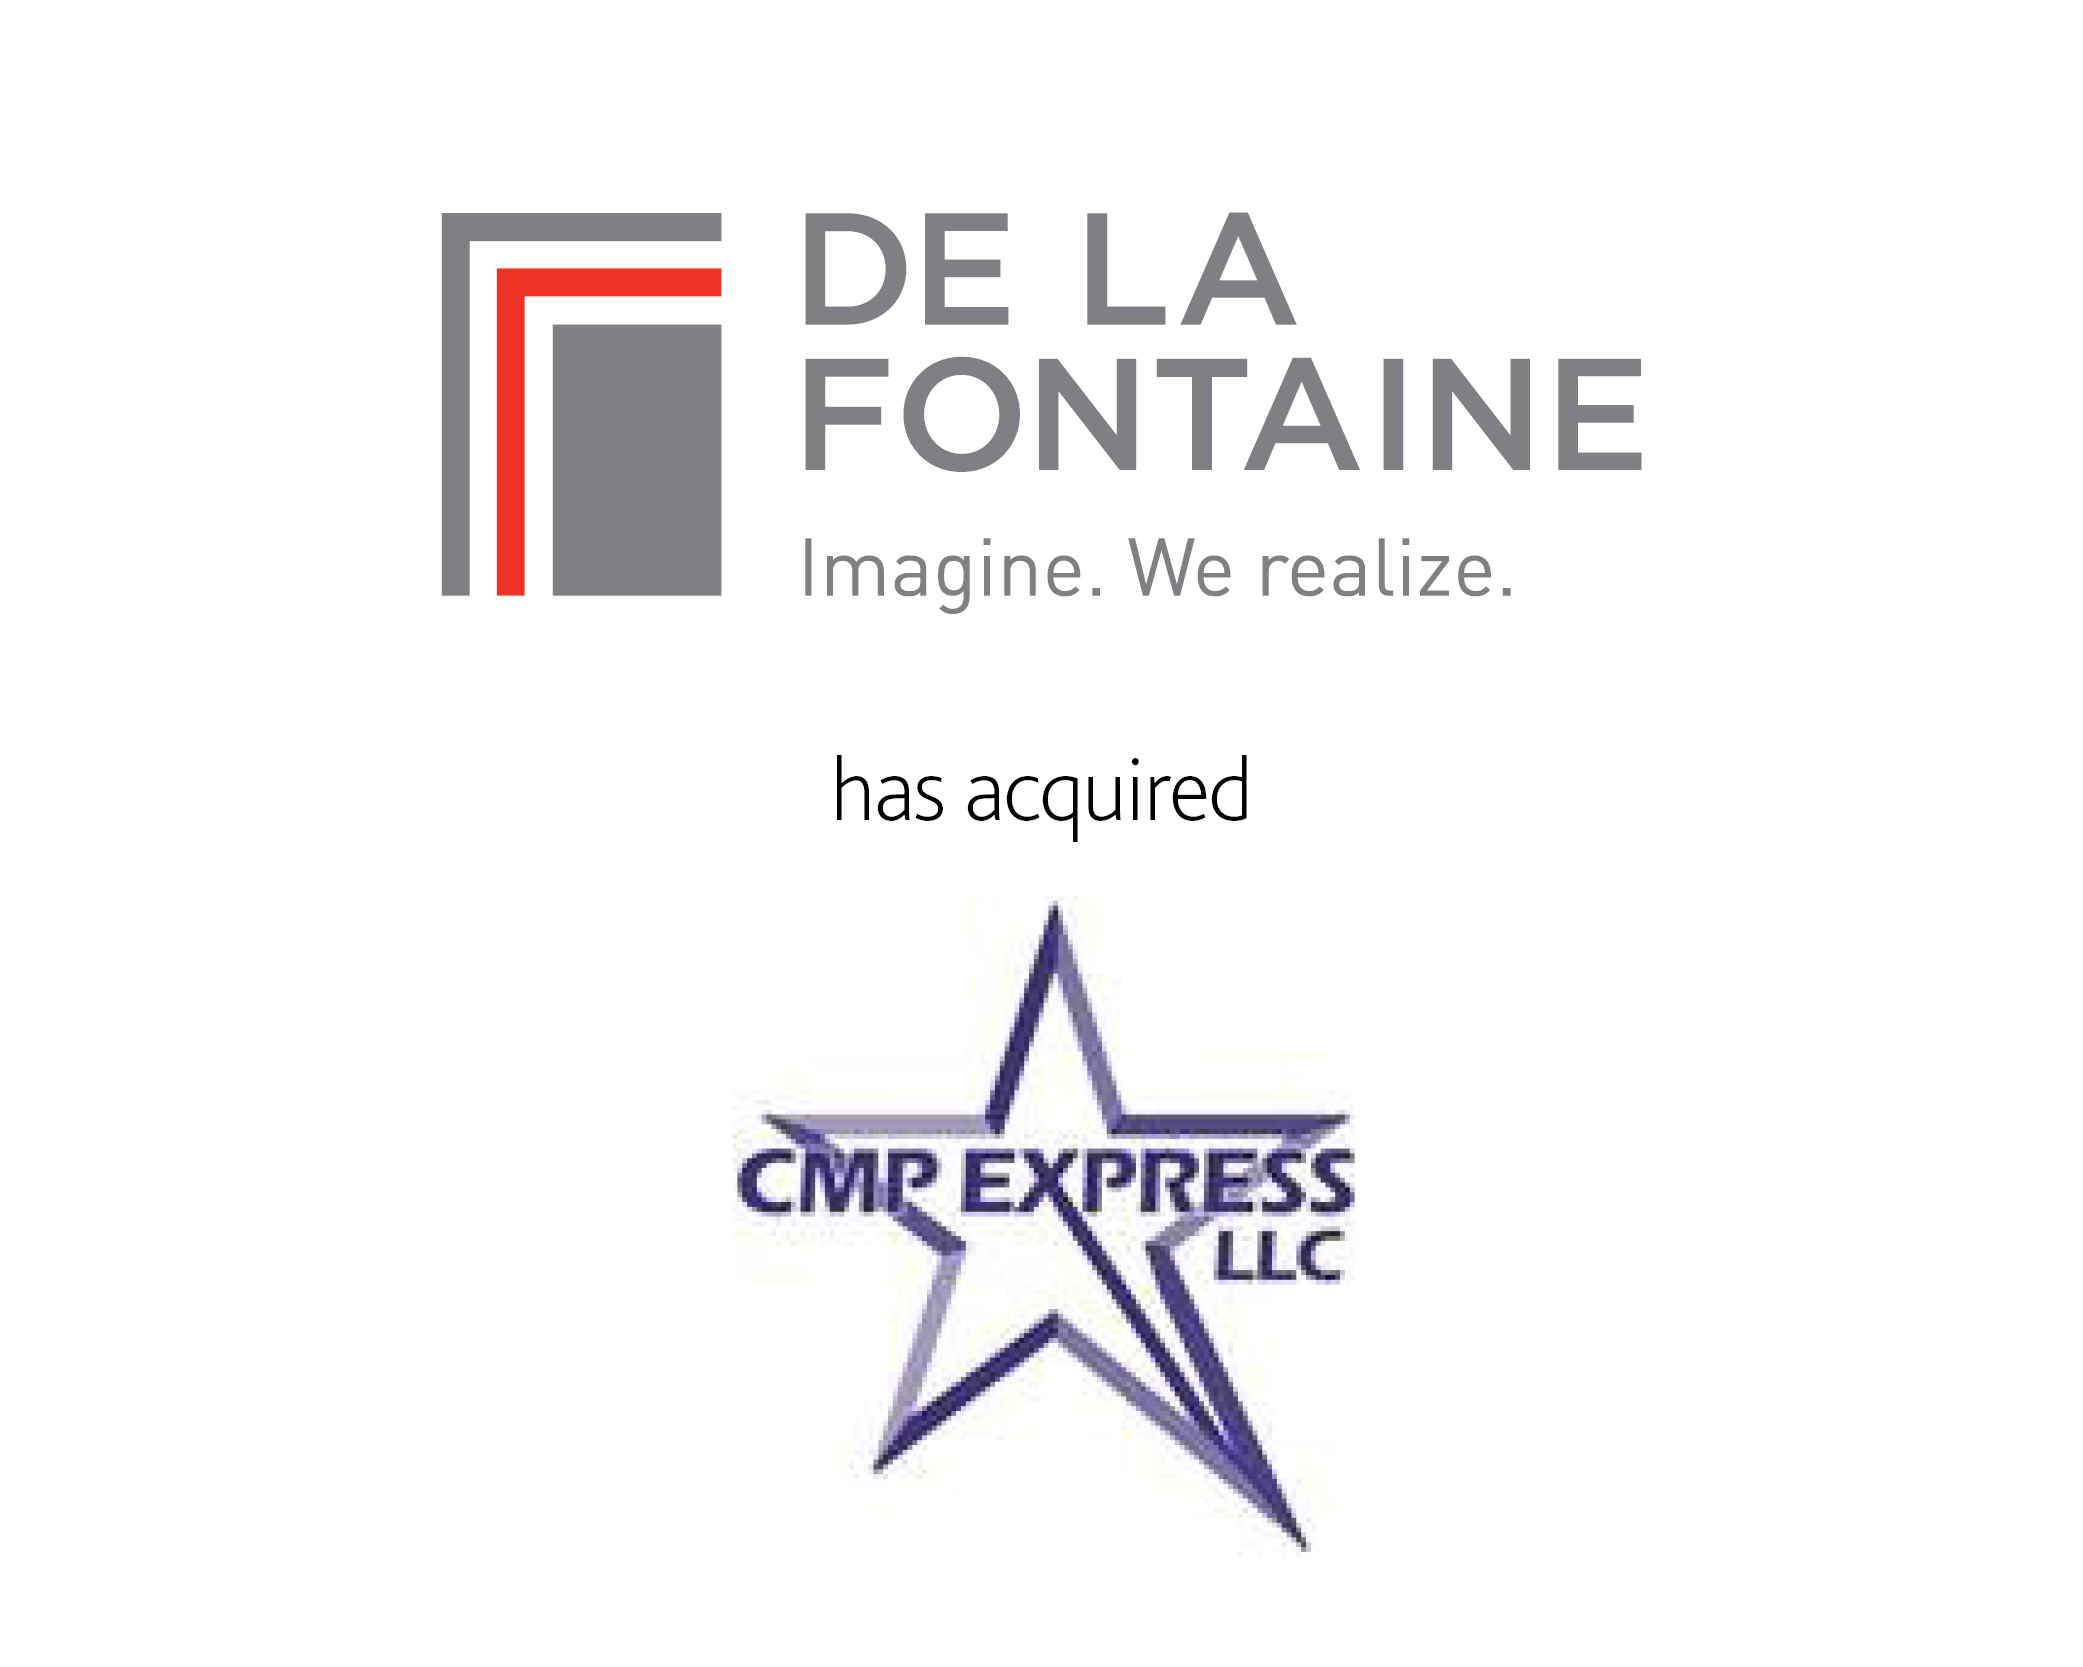 De La Fontaine has acquired CMP Express LLC